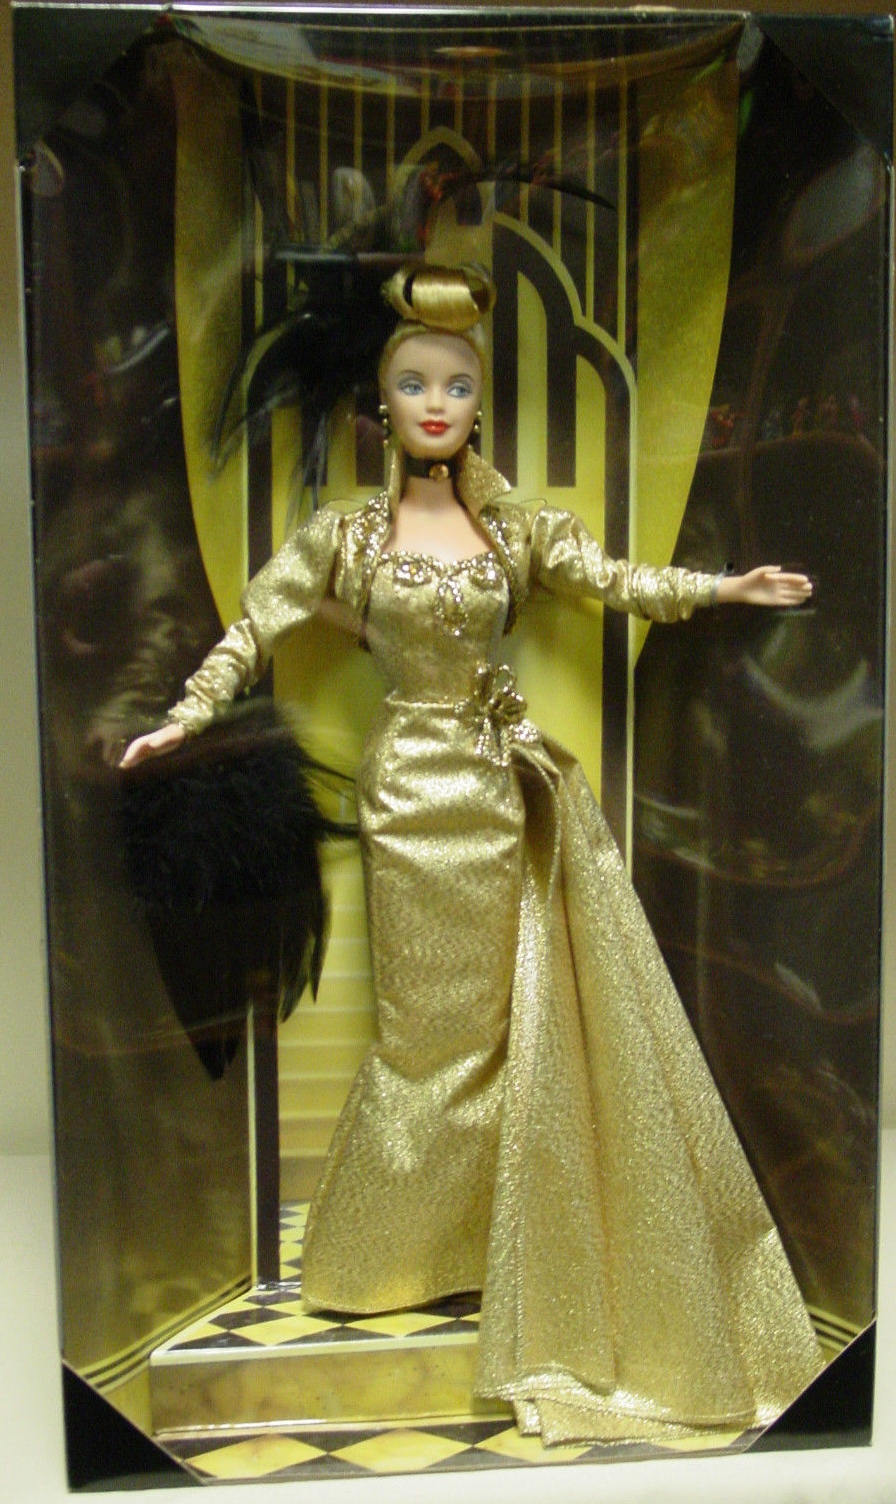 golden hollywood barbie